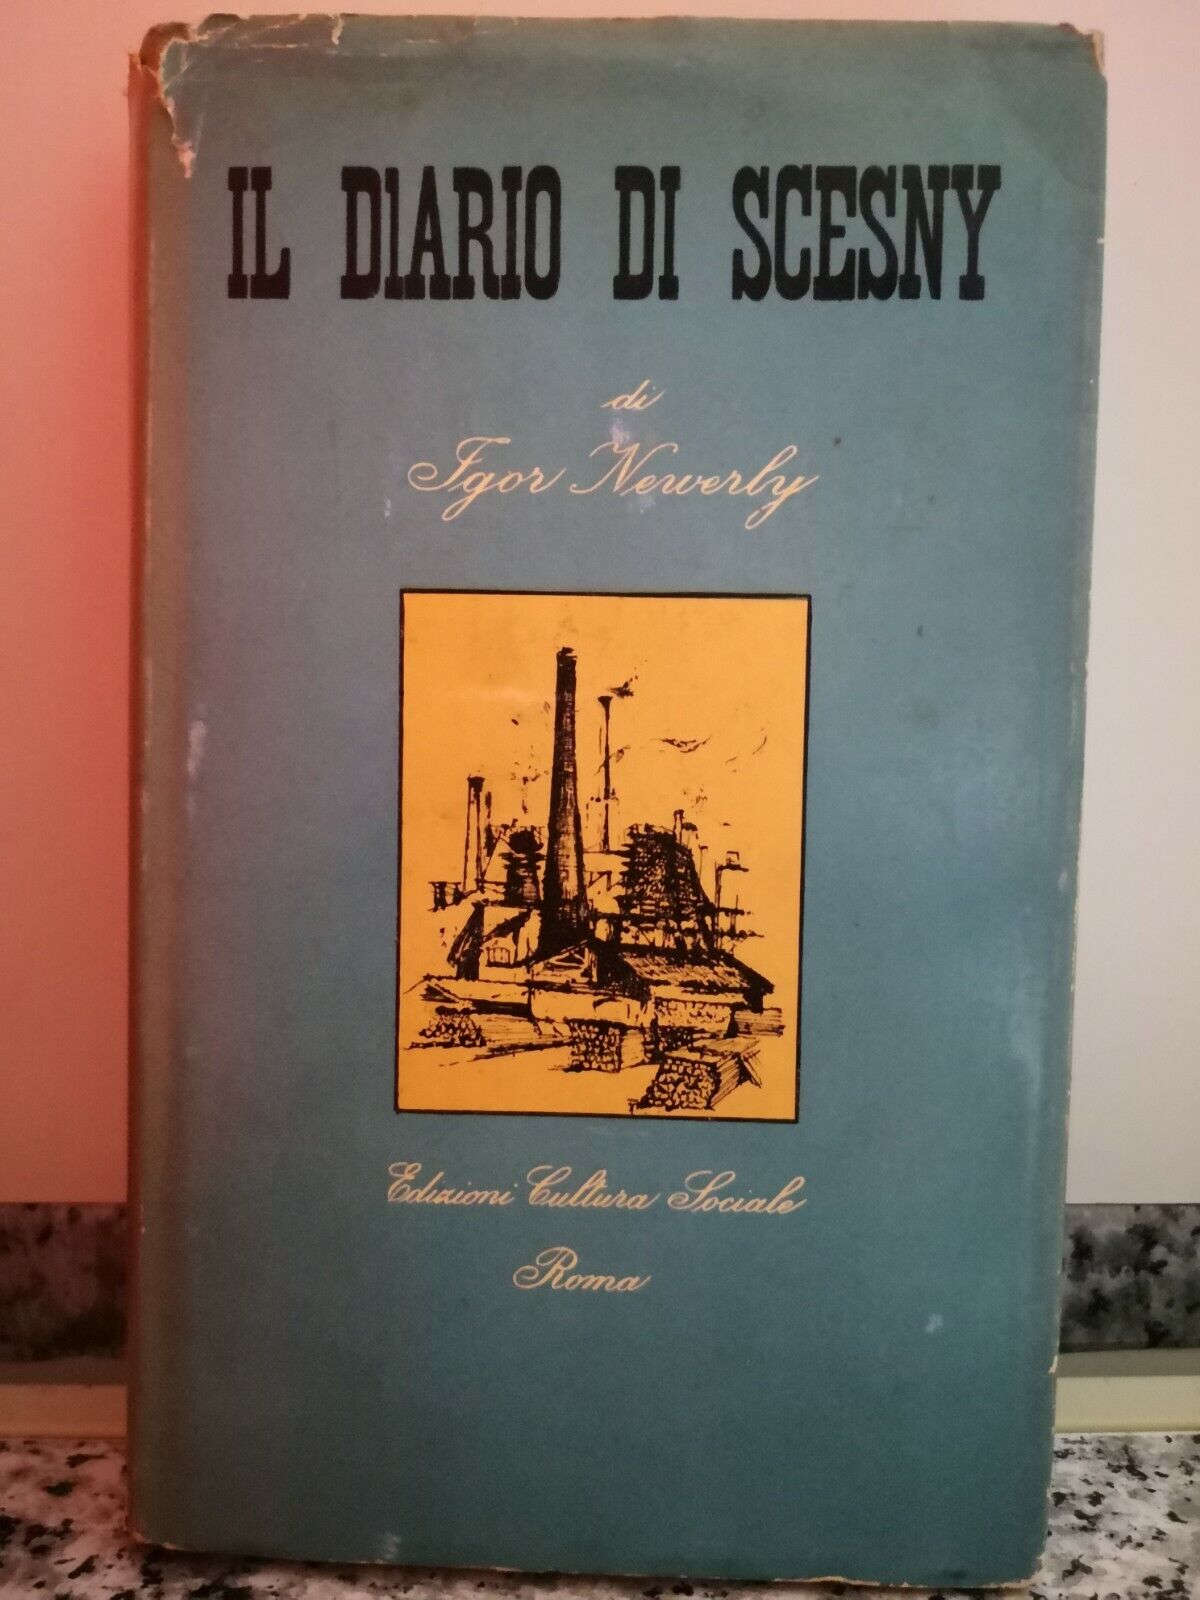  Il diario di Scesny  di Igor Newerly,  1955,  Cultura Sociale-F